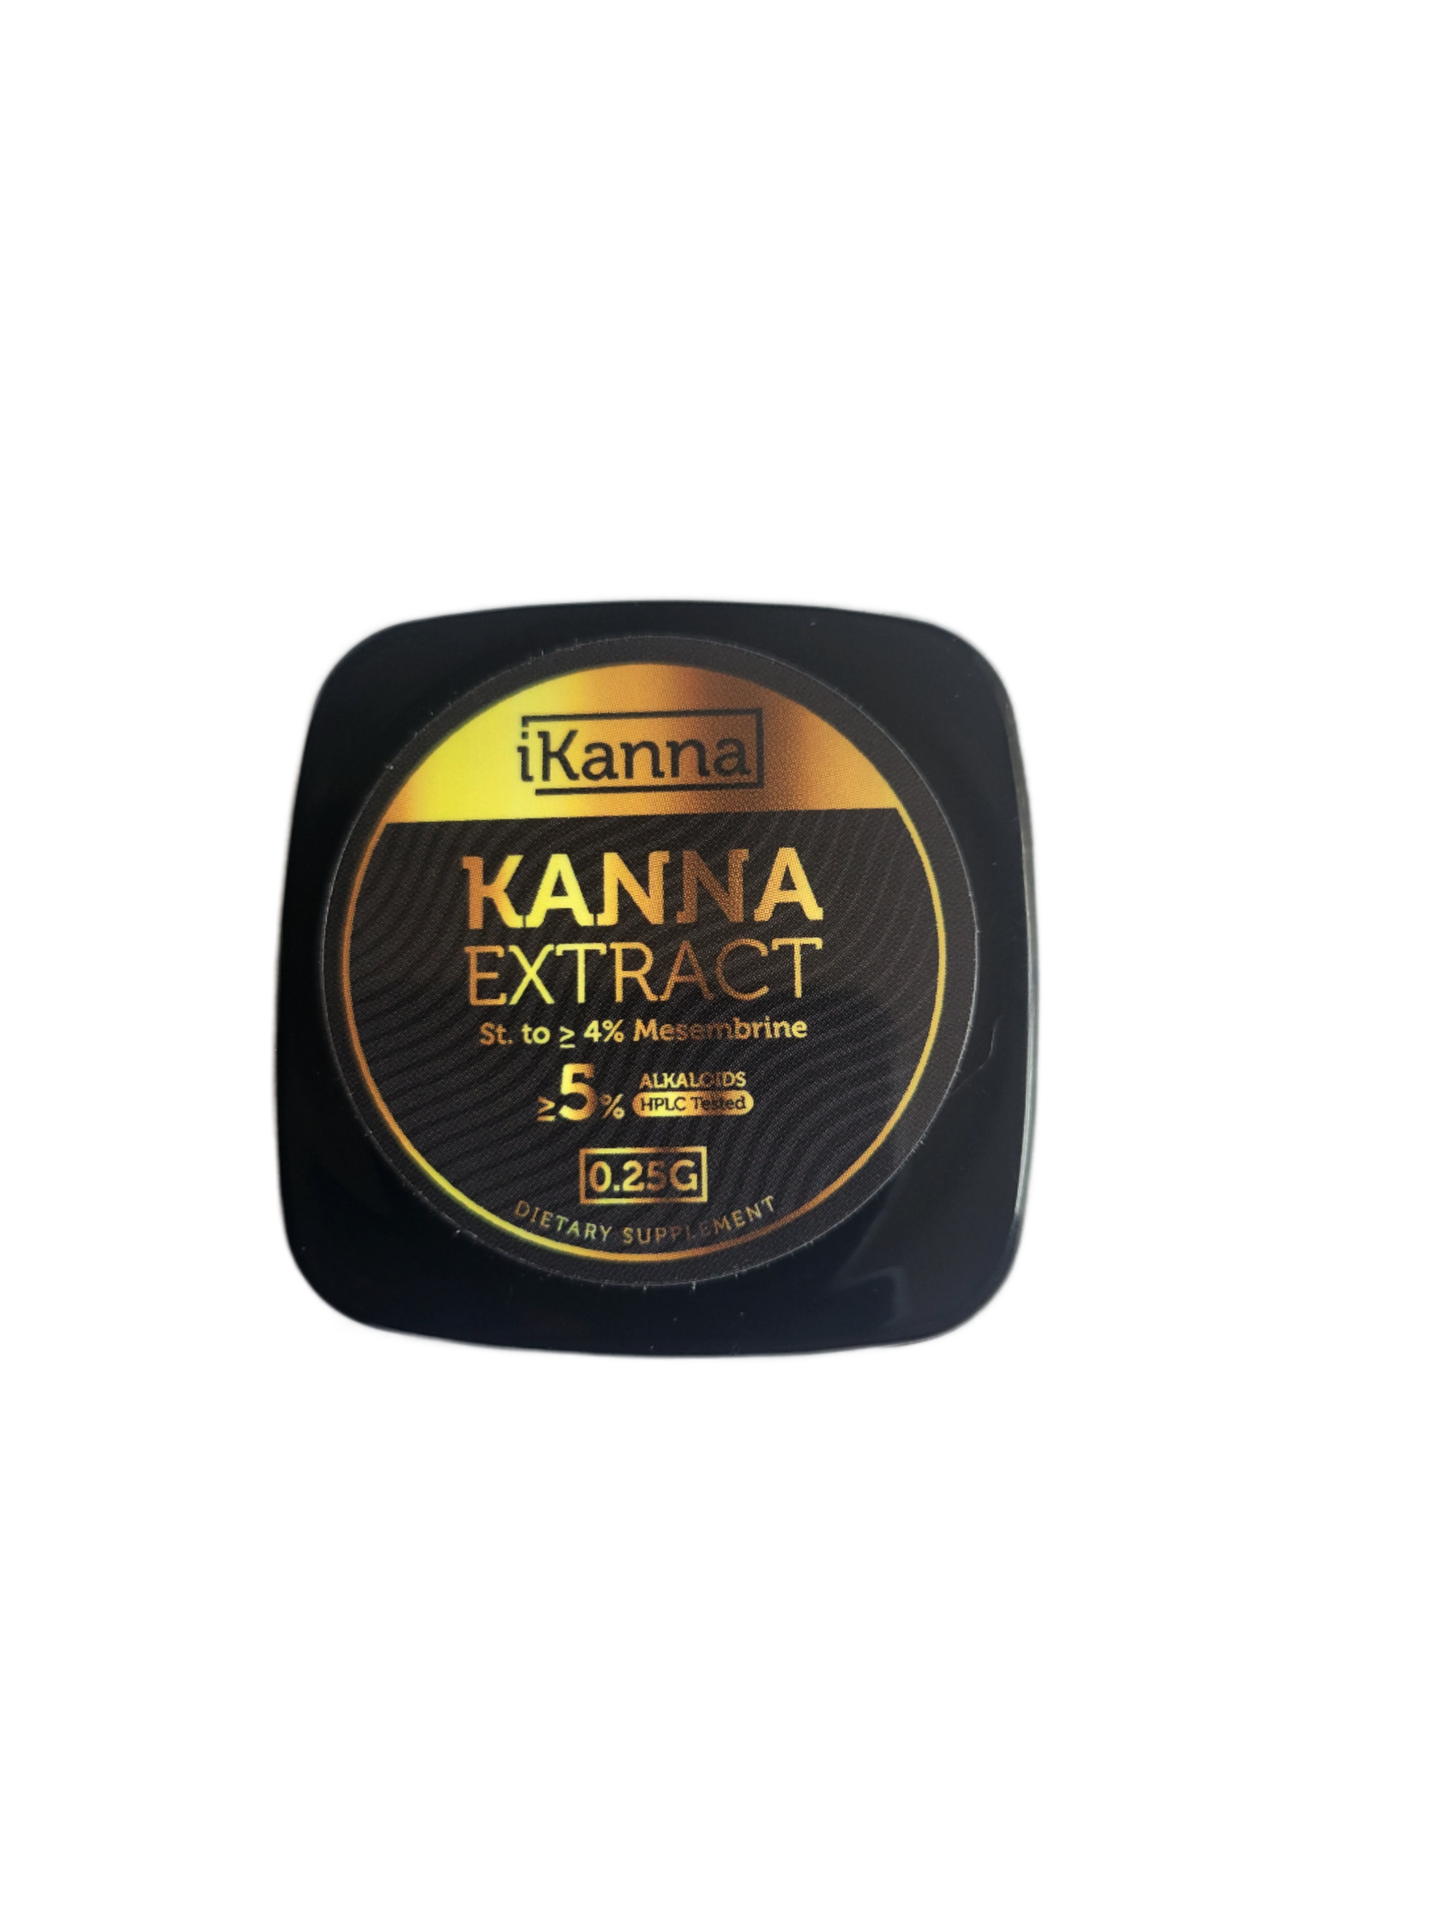 Kanna Extract